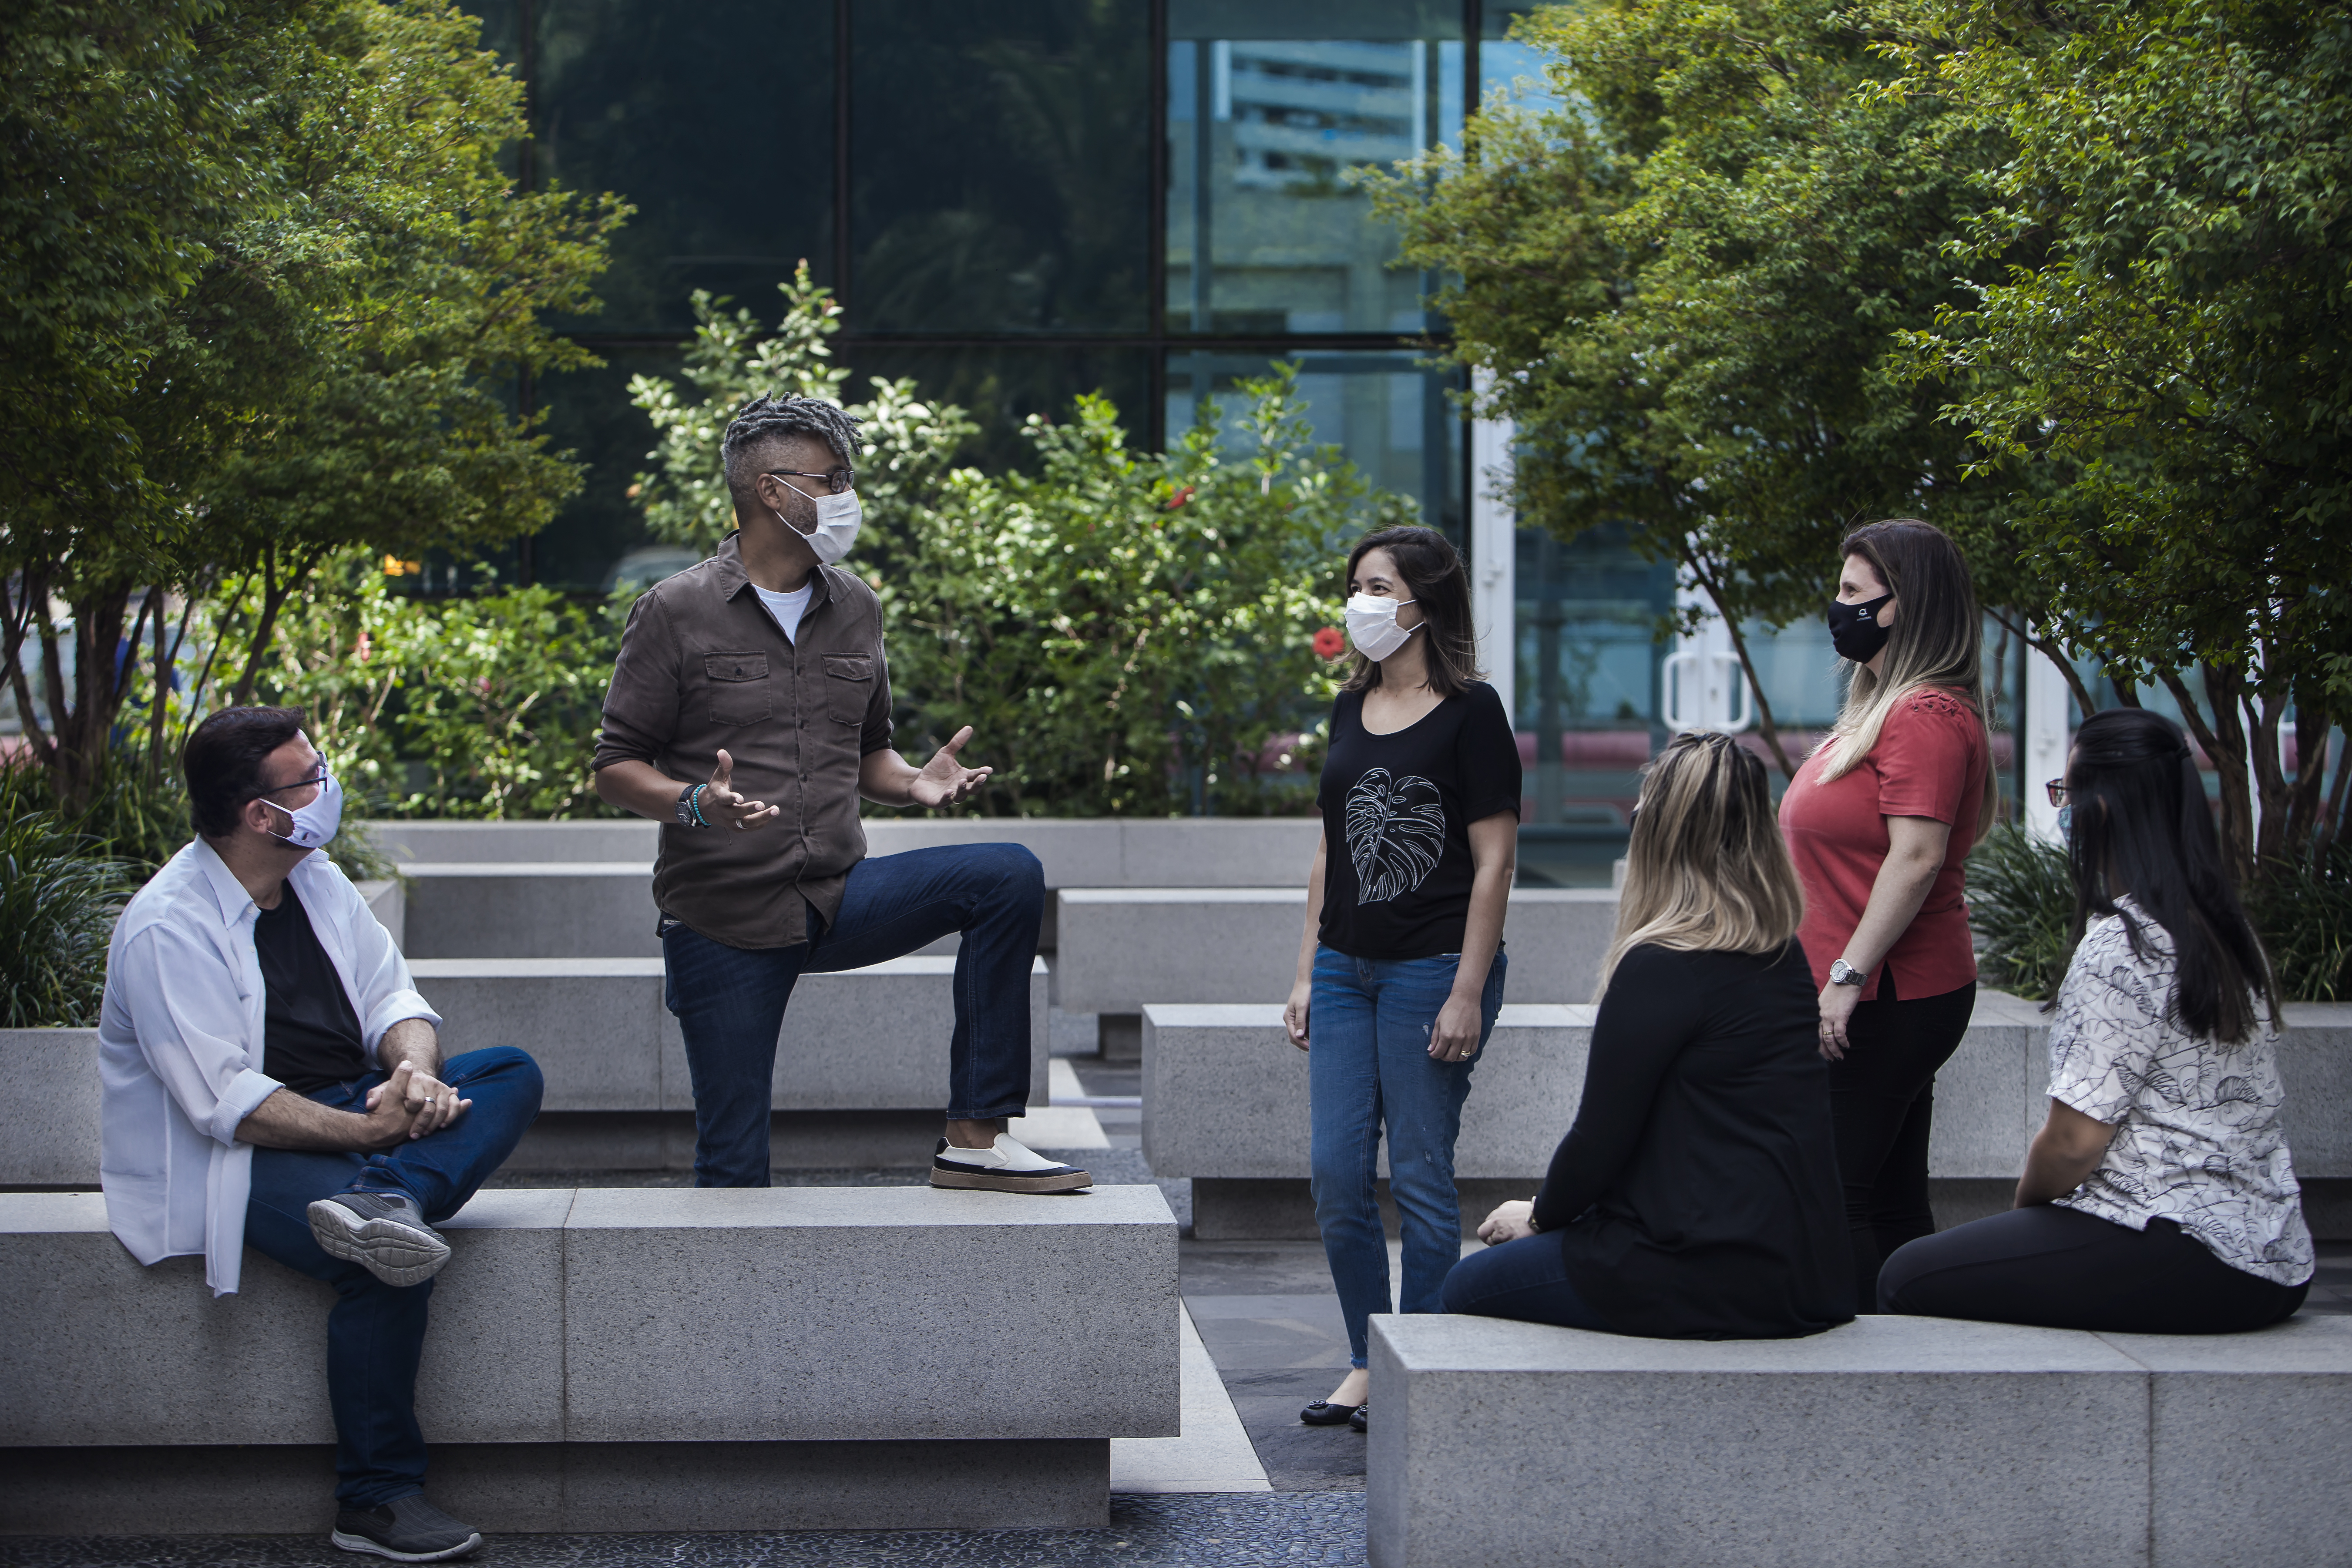 Imagem mostra um grupo de 5 pessoas conversando, usando máscaras, em um jardim. Ao centro está Moisés Marques, um homem negro de camisa marrom.